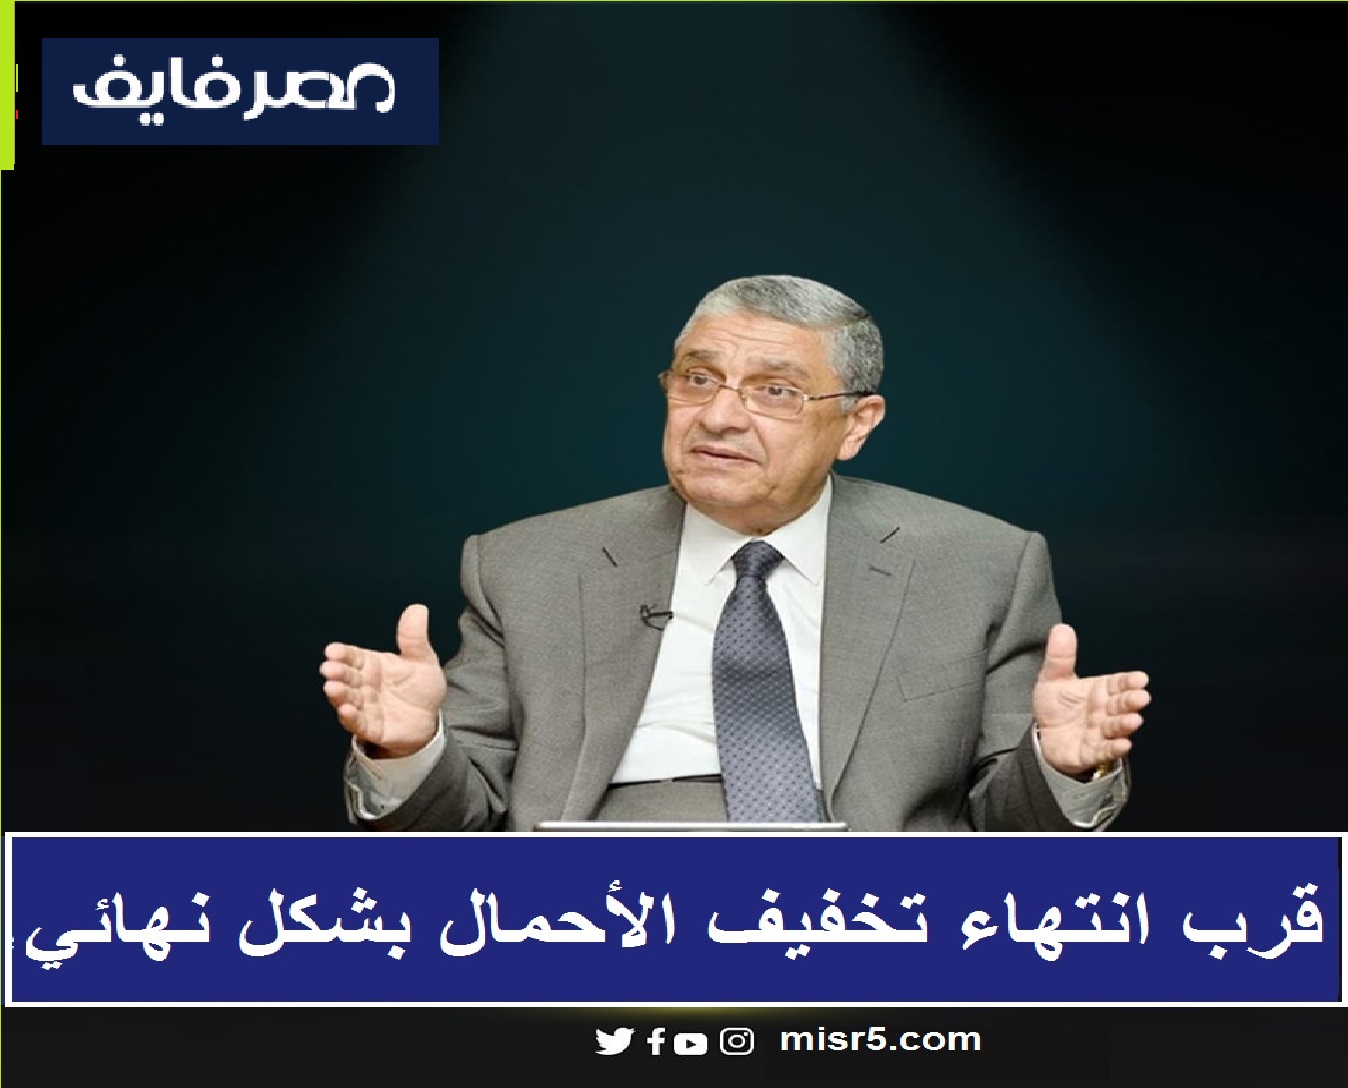 خبر سار ينتظر المصريين بشأن انقطاع الكهرباء خلال الأسبوع القادم